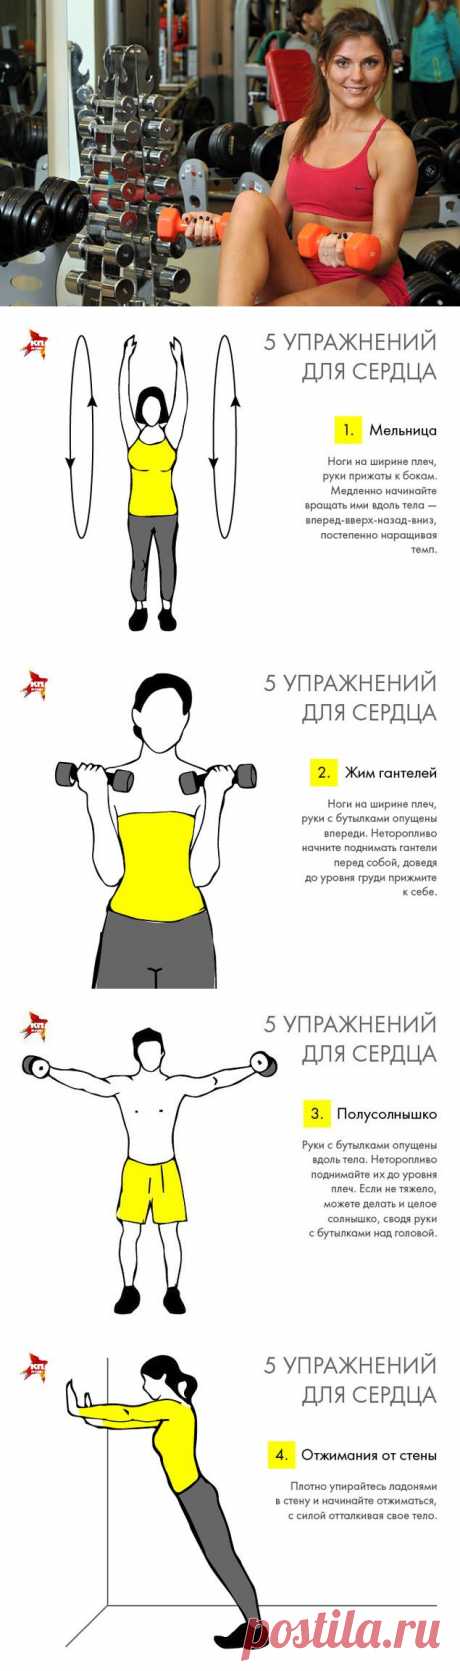 5 упражнений, которые помогут поддержать сердце // KP.RU